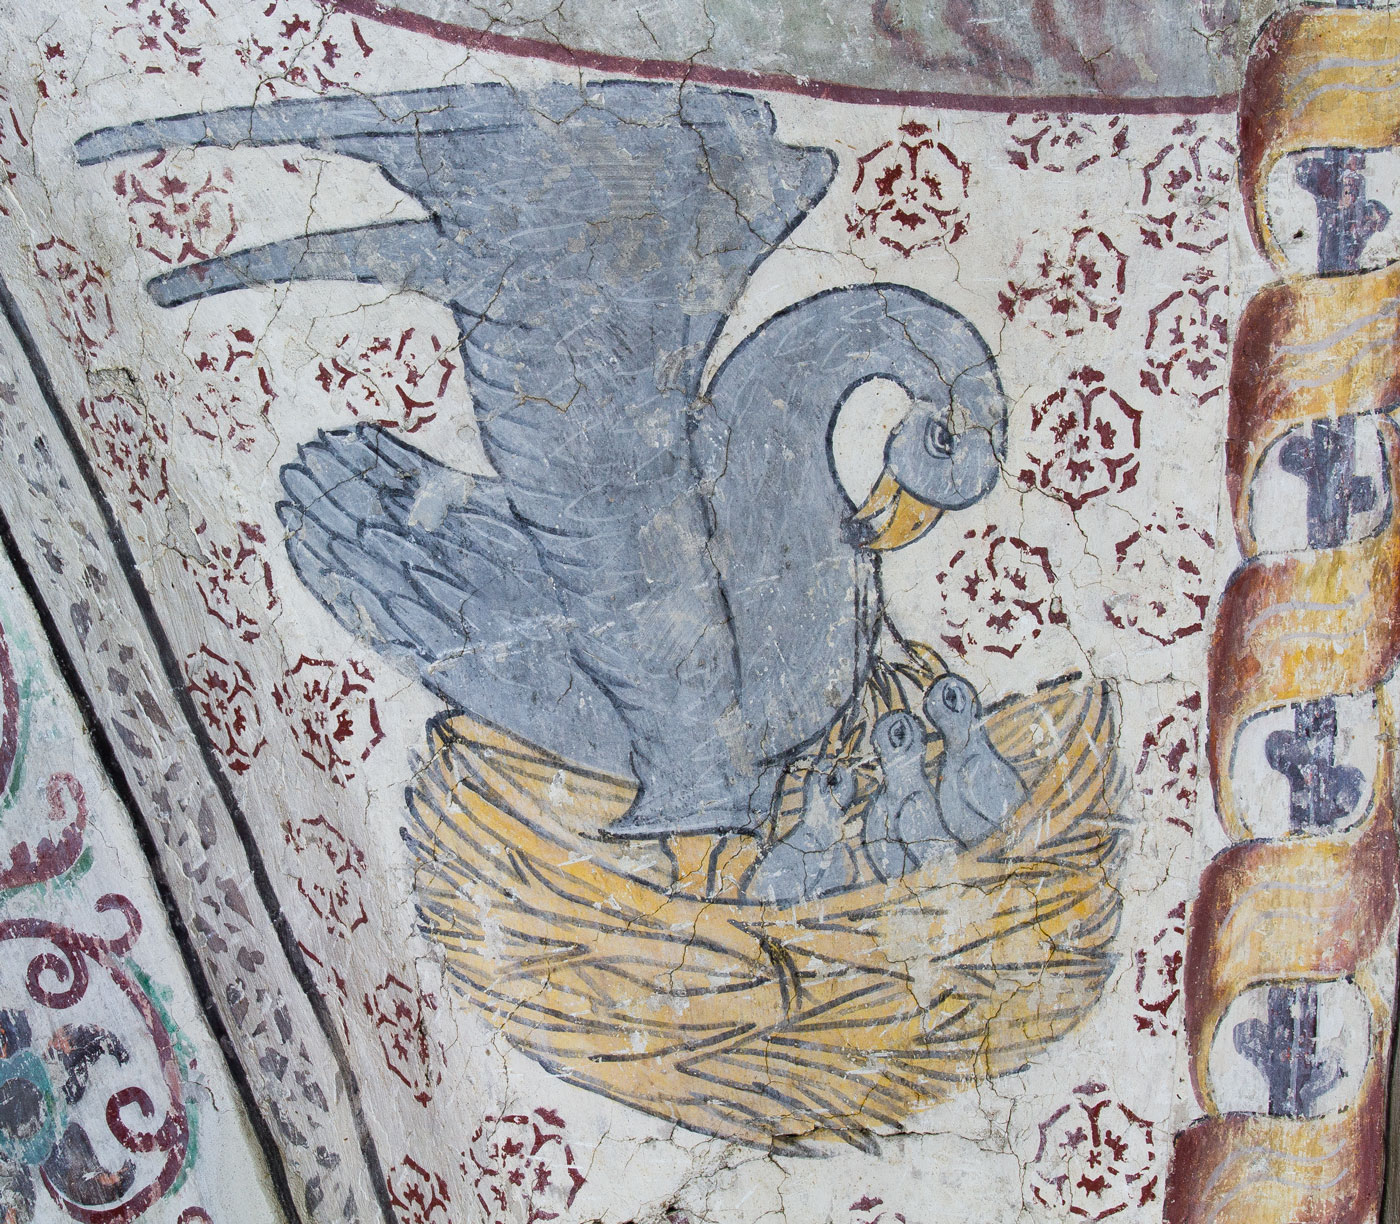 Pelikanen, som matar sina ungar med sitt eget blod (NV) - Löts kyrka